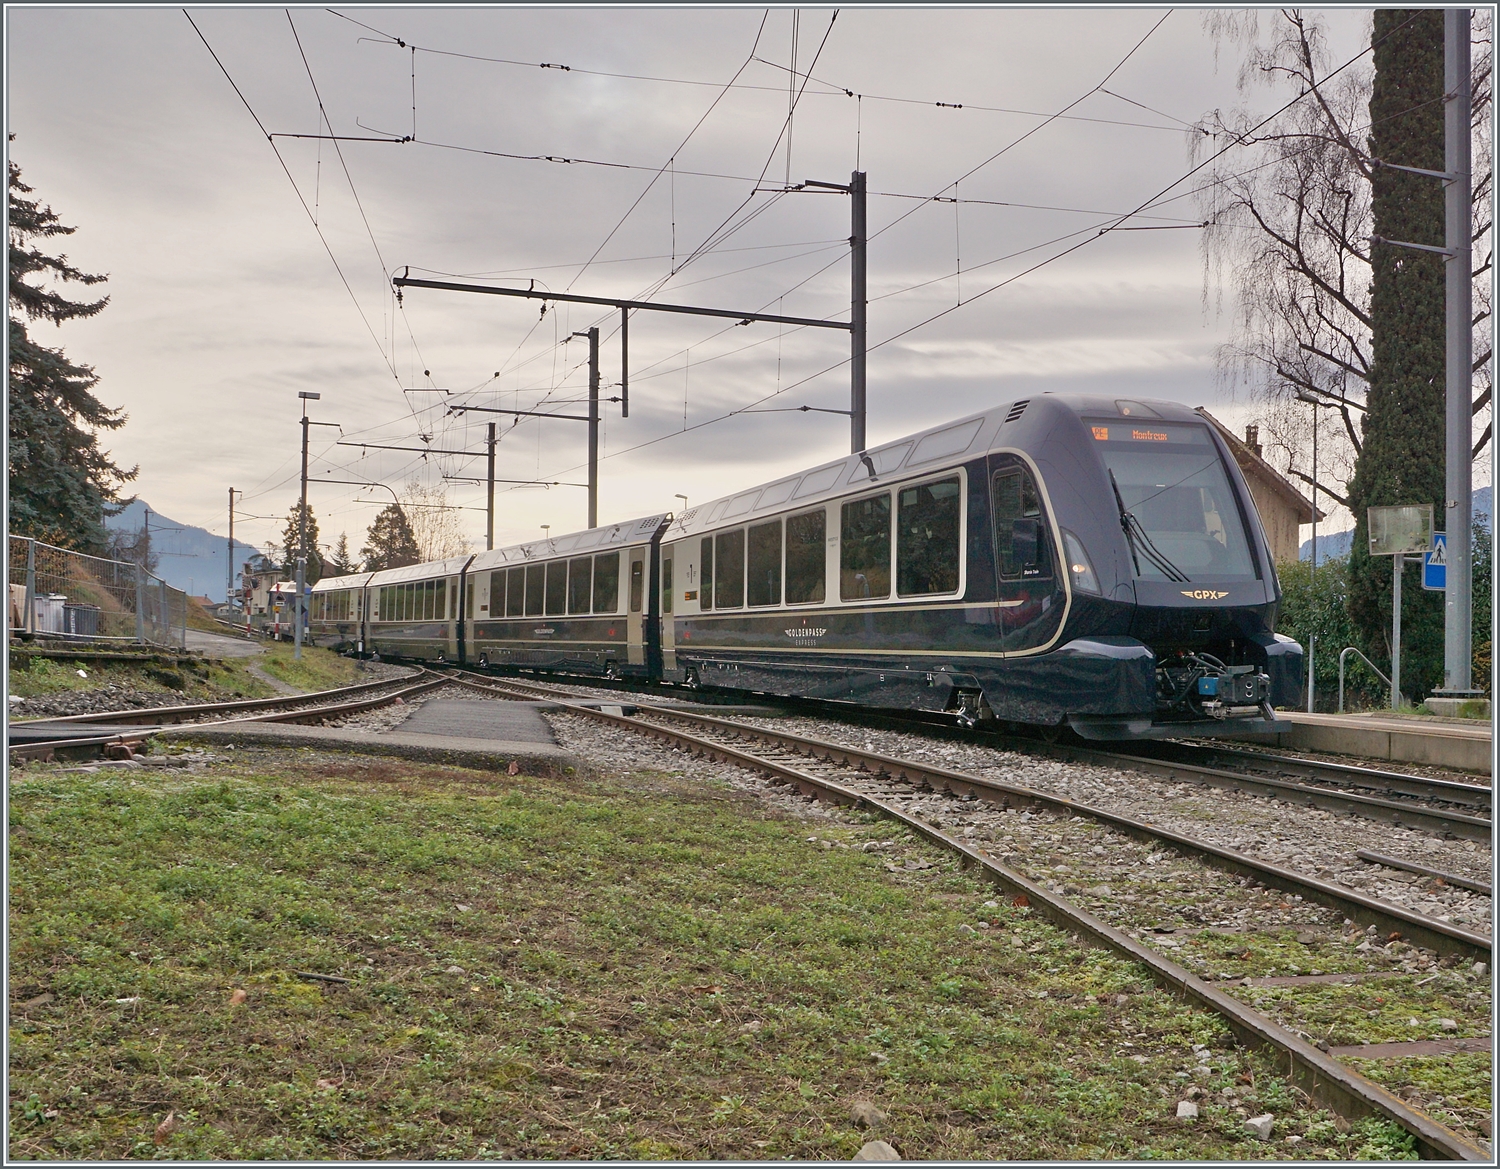 Der GoldenPass Express GPx 4065 von Interlaken Ost nach Montreux hat bei der Durchfahrt in Fontanivent sein Ziel schon fast erreicht.

4. Januar 2023